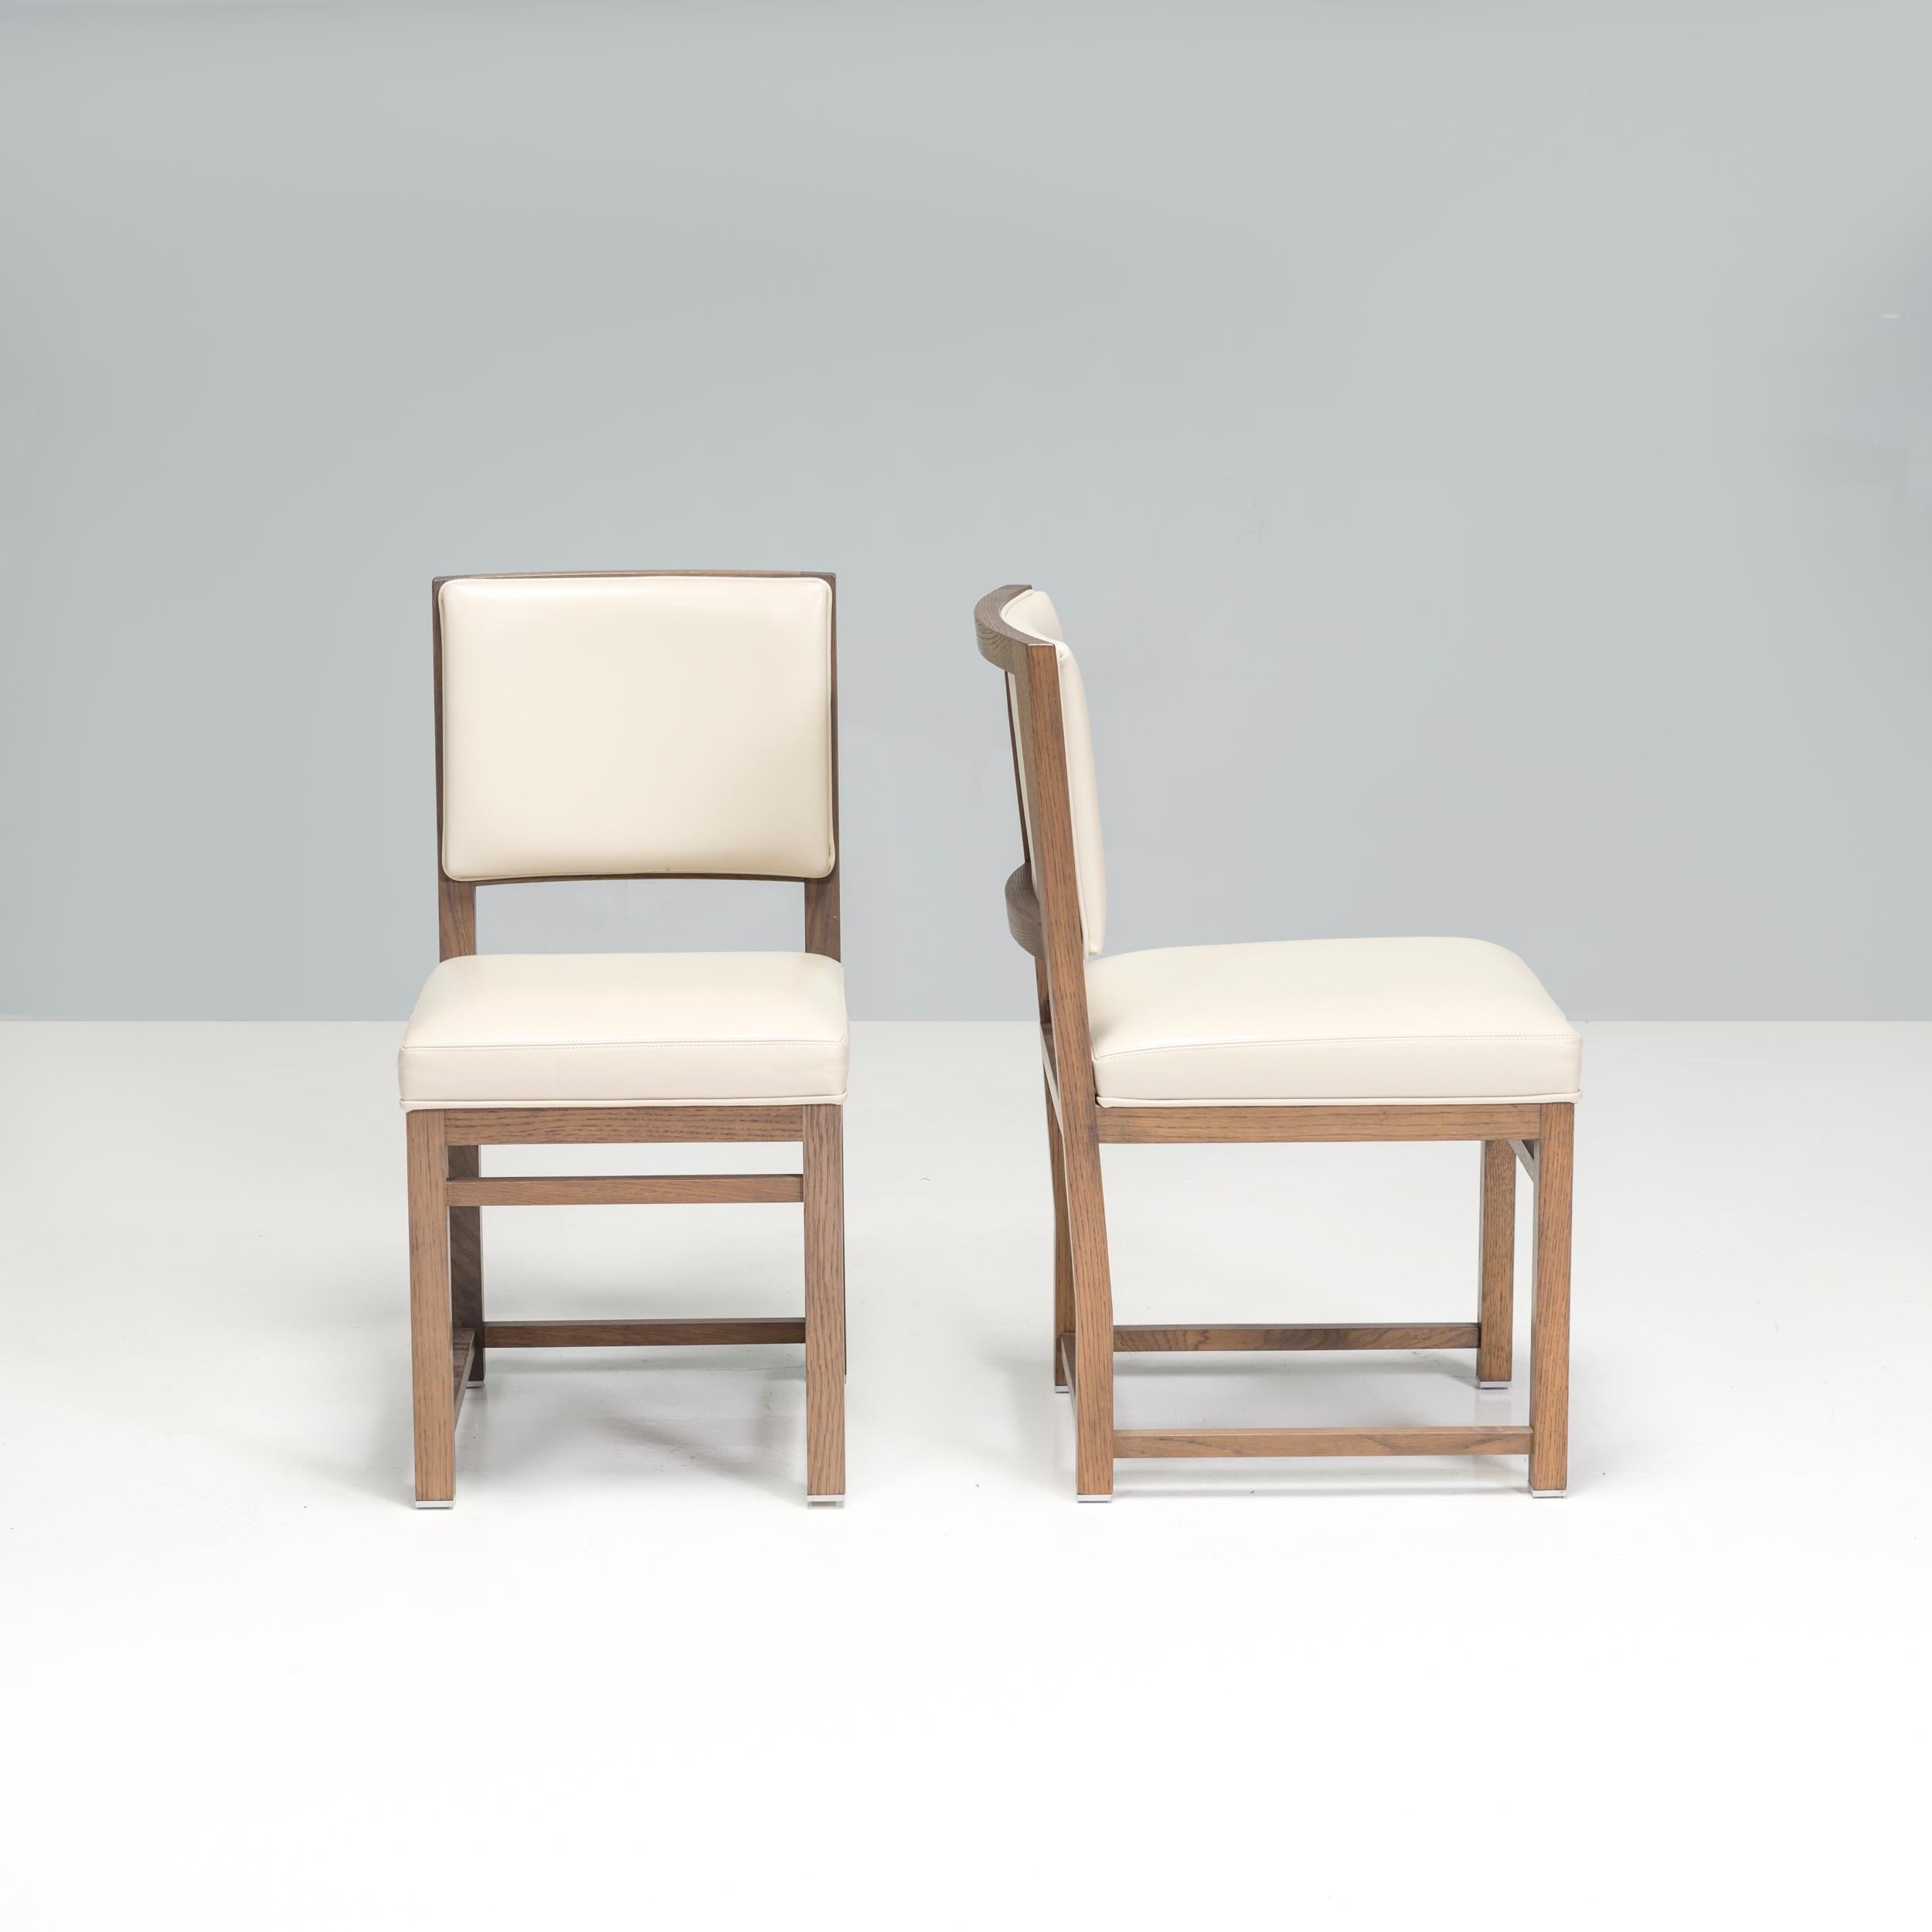 Der 2008 von Antonio Citterio für seine Maxalto Simplice Collection entworfene Musa Esszimmerstuhl ist ein fantastisches Beispiel für zeitgenössisches italienisches Design.

Die kantigen Stühle aus grauem Eichenholz haben kufenartige Beine und eine